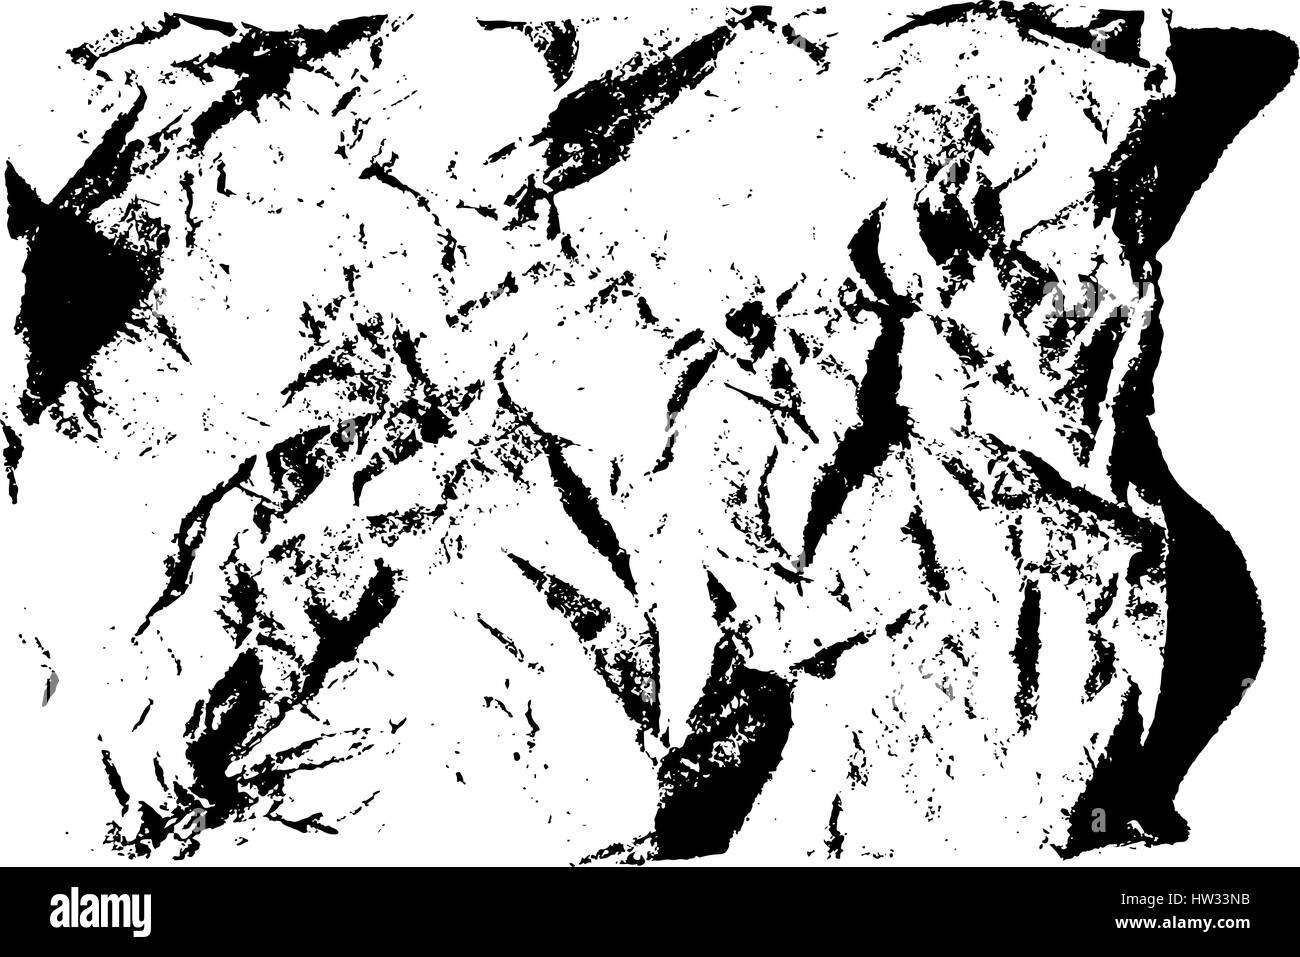 Isolierte Grunge Textur des Papiermaterial in schwarz und weiß, Vintage-Hintergrund-Ressource. EPS10 Vektor. Stock Vektor